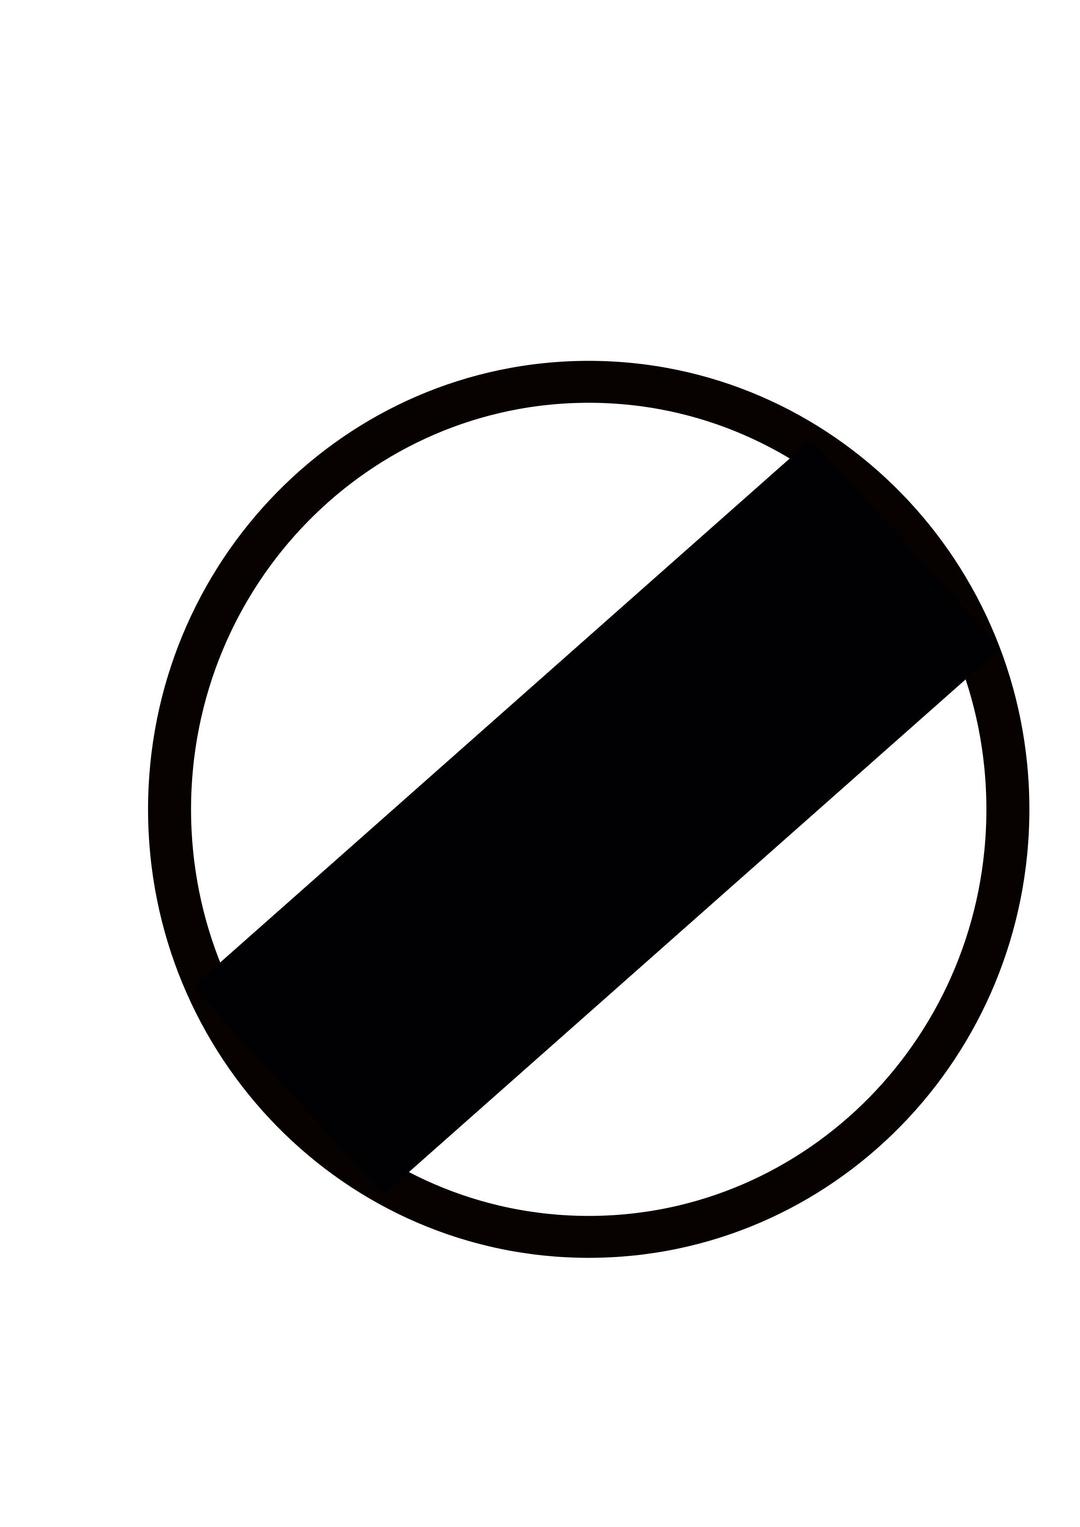 Indian road sign - Restriction ends png transparent